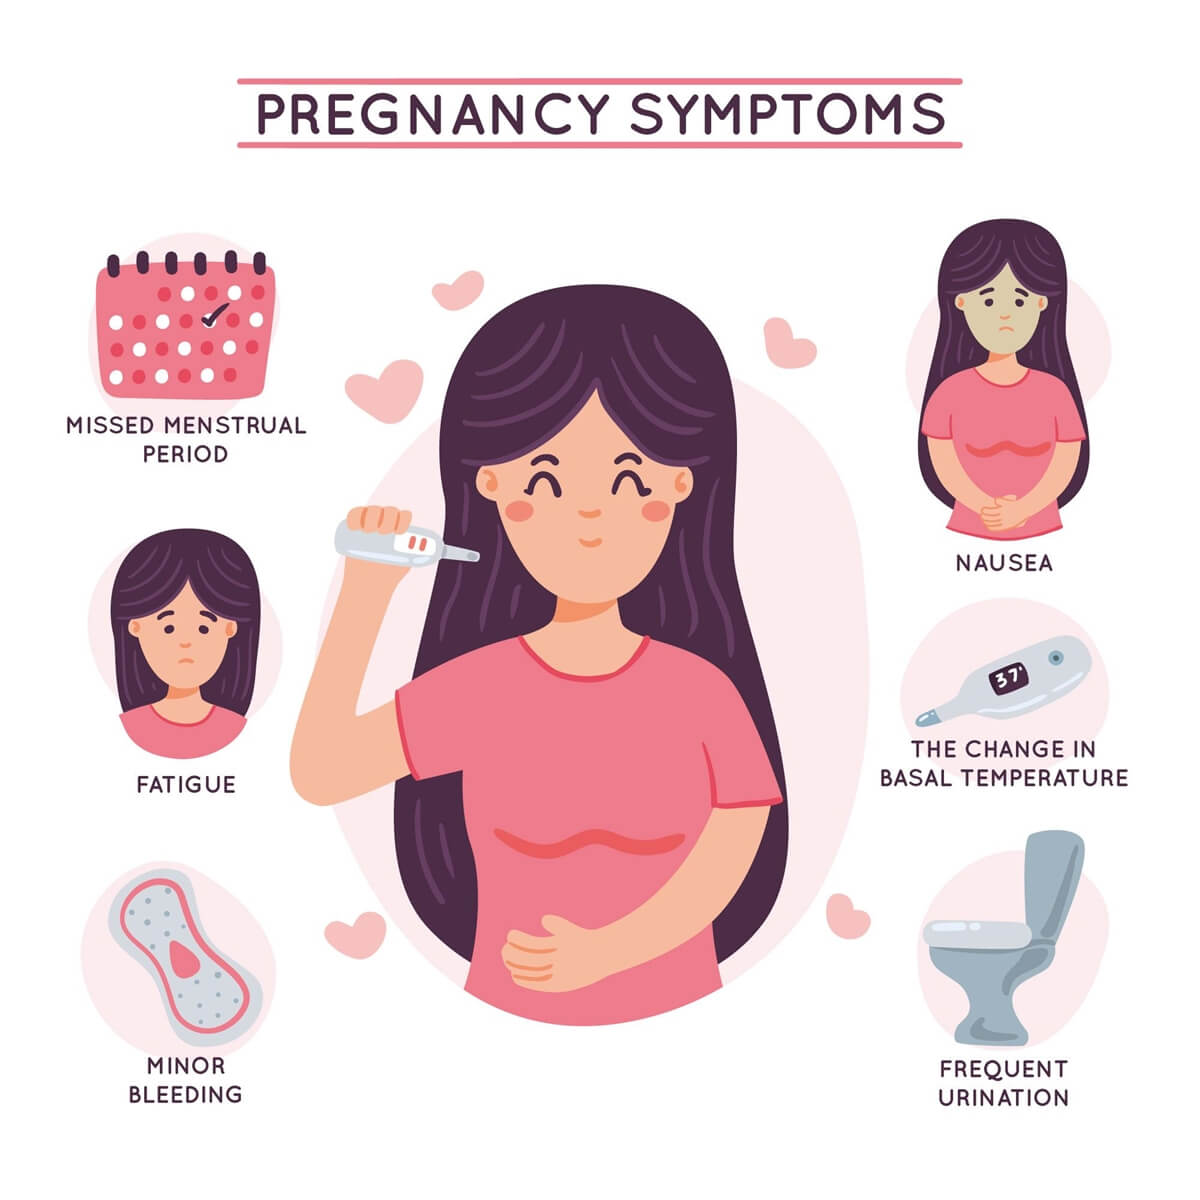 감기와 헷갈리는 임신 극초기 증상 5가지